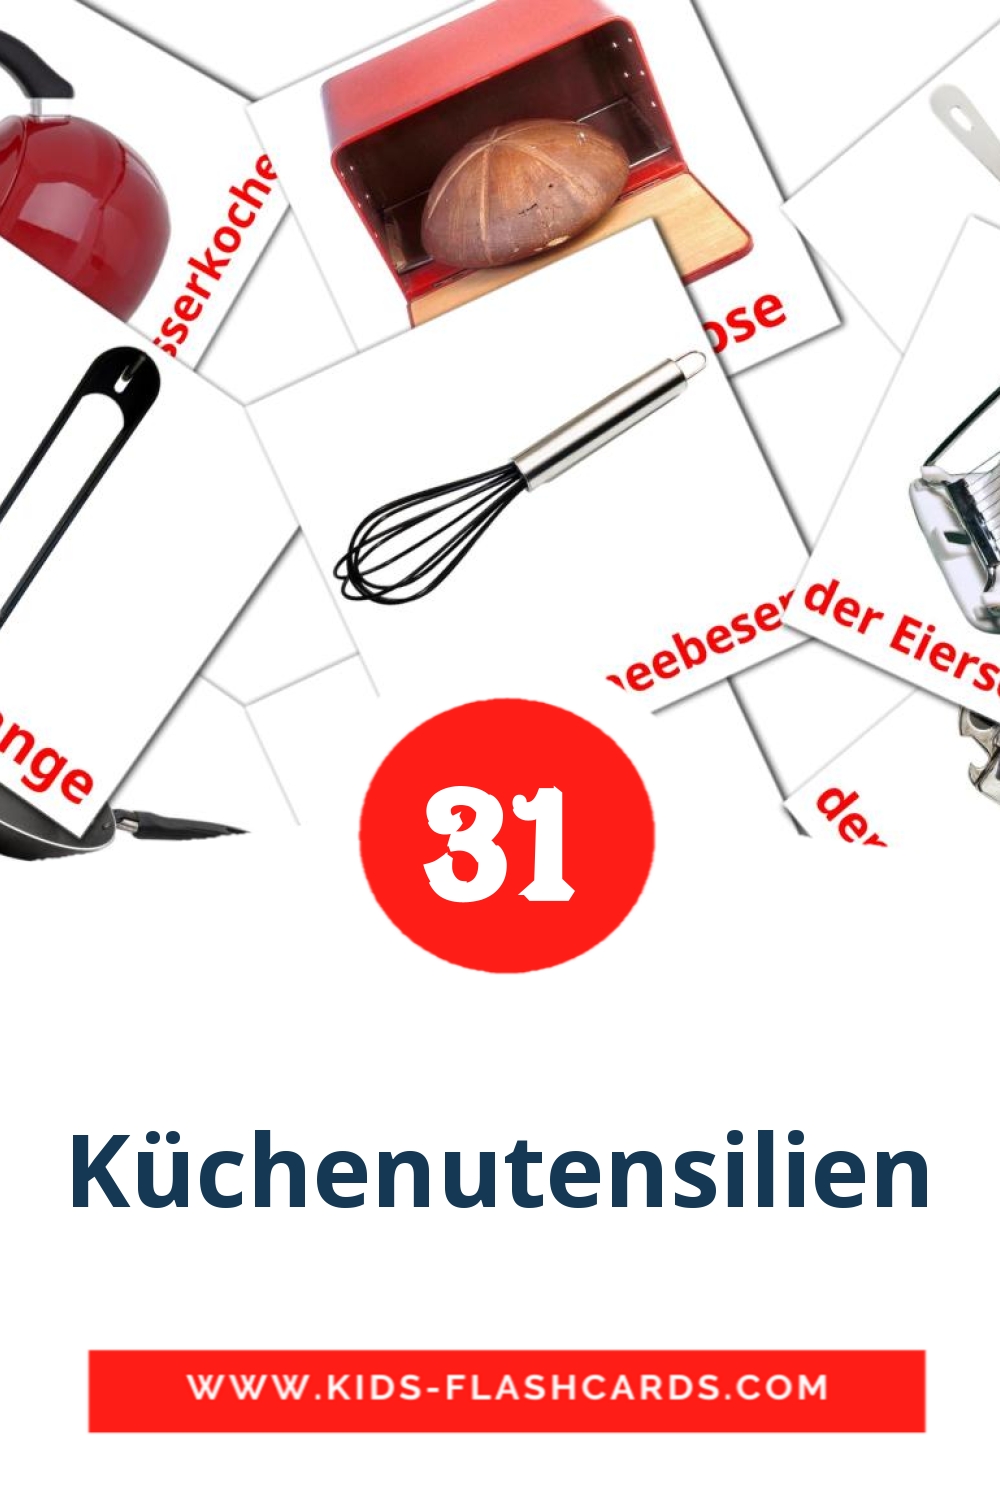 35 tarjetas didacticas de Küchenutensilien para el jardín de infancia en alemán